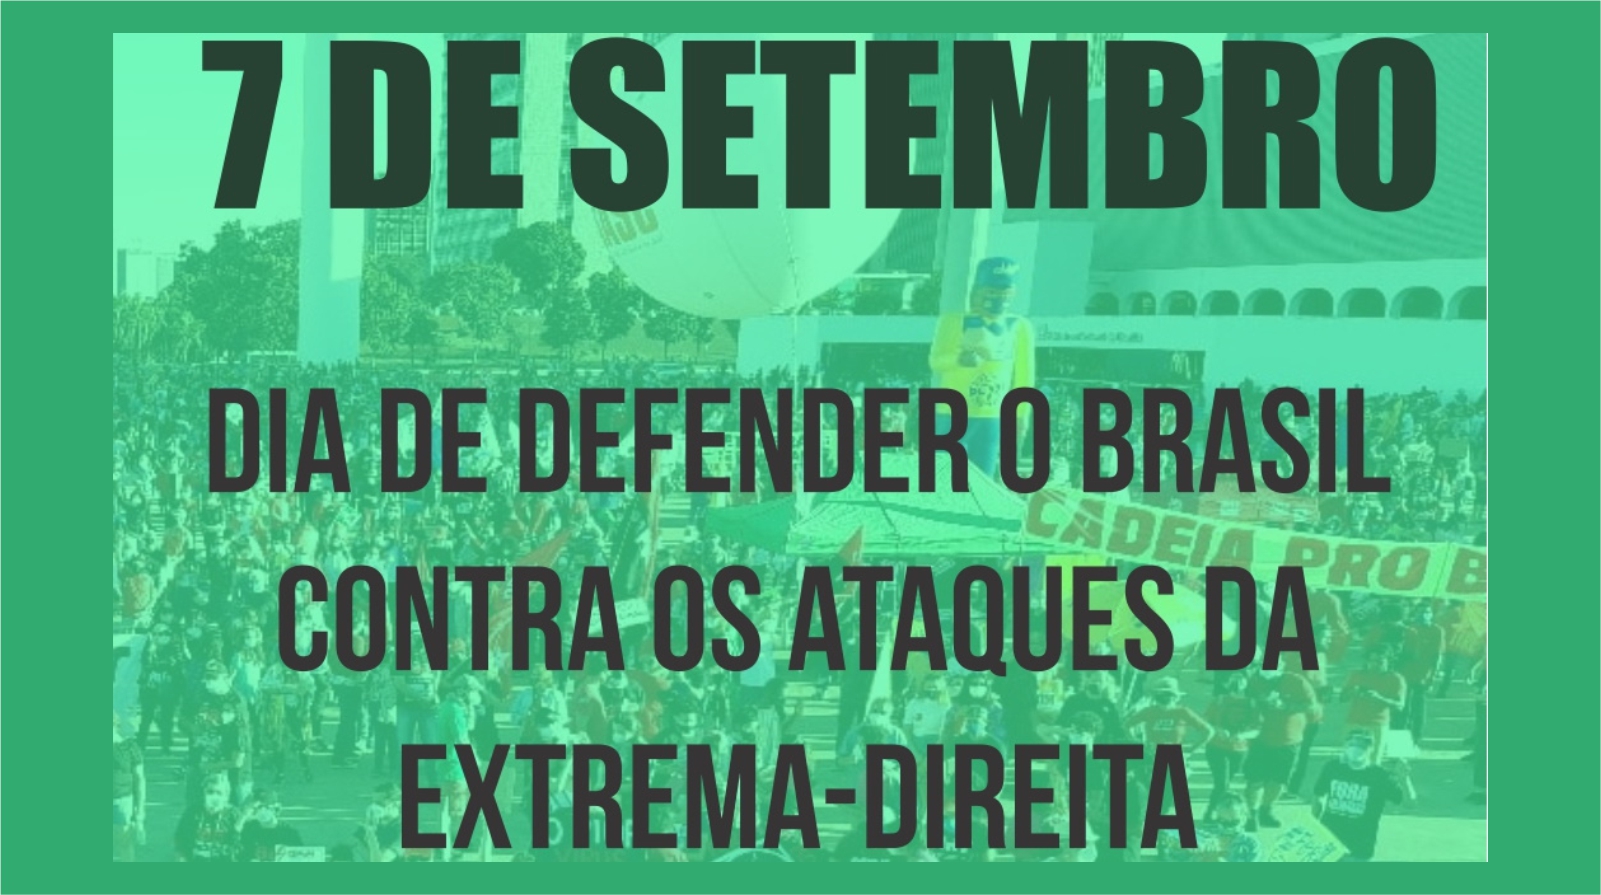 7 de setembro - Dia de defender o Brasil contra os ataques da extrema-direita